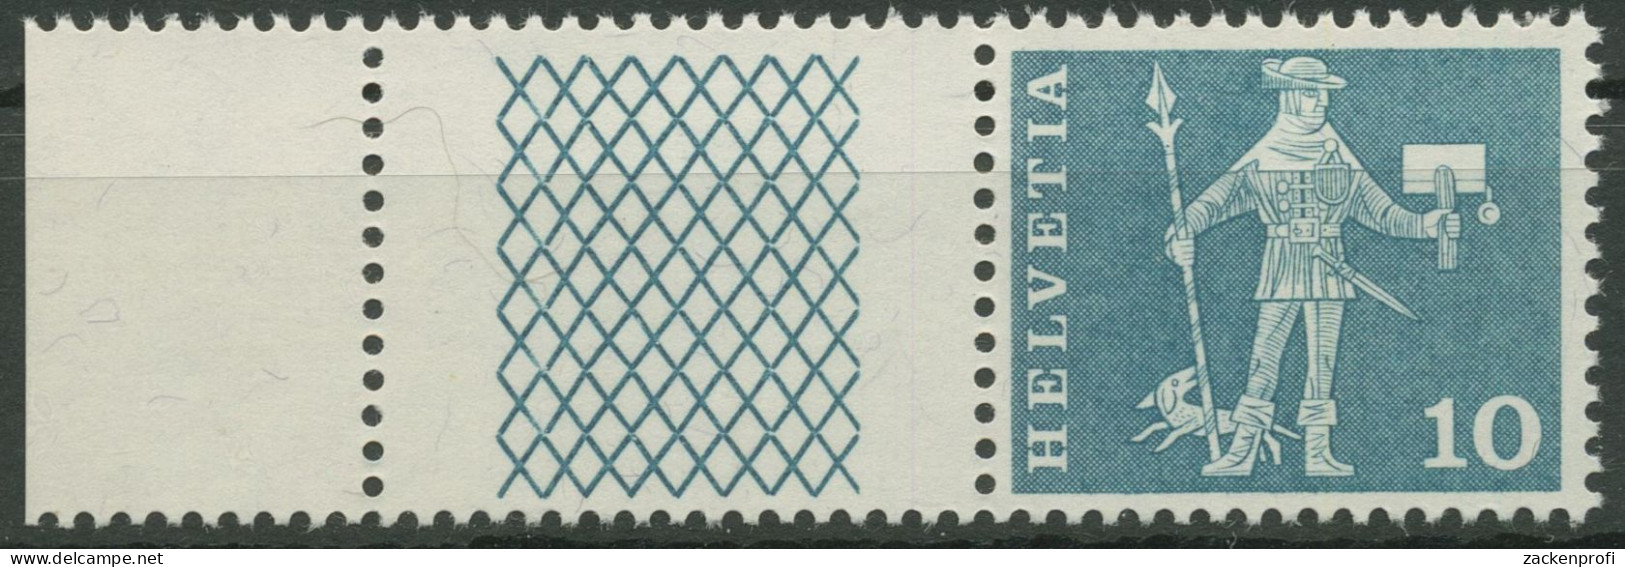 Schweiz 1960 Postmotive Postbote 697 W 26 Postfrisch - Ongebruikt